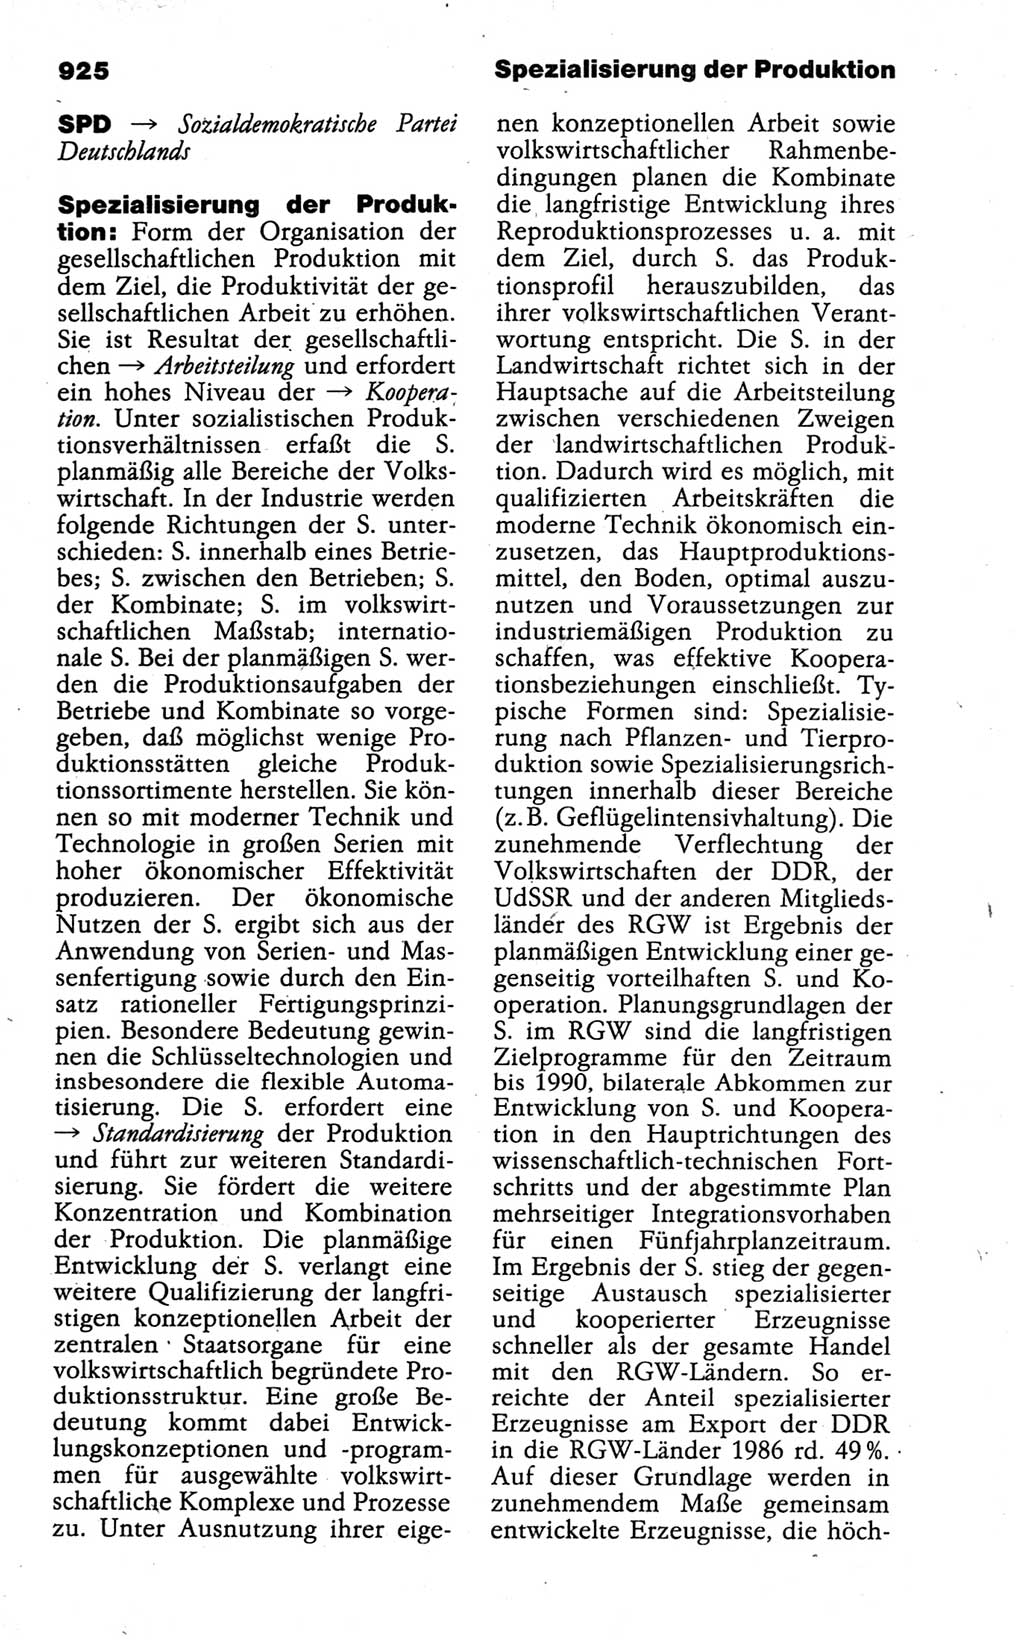 Kleines politisches Wörterbuch [Deutsche Demokratische Republik (DDR)] 1988, Seite 925 (Kl. pol. Wb. DDR 1988, S. 925)